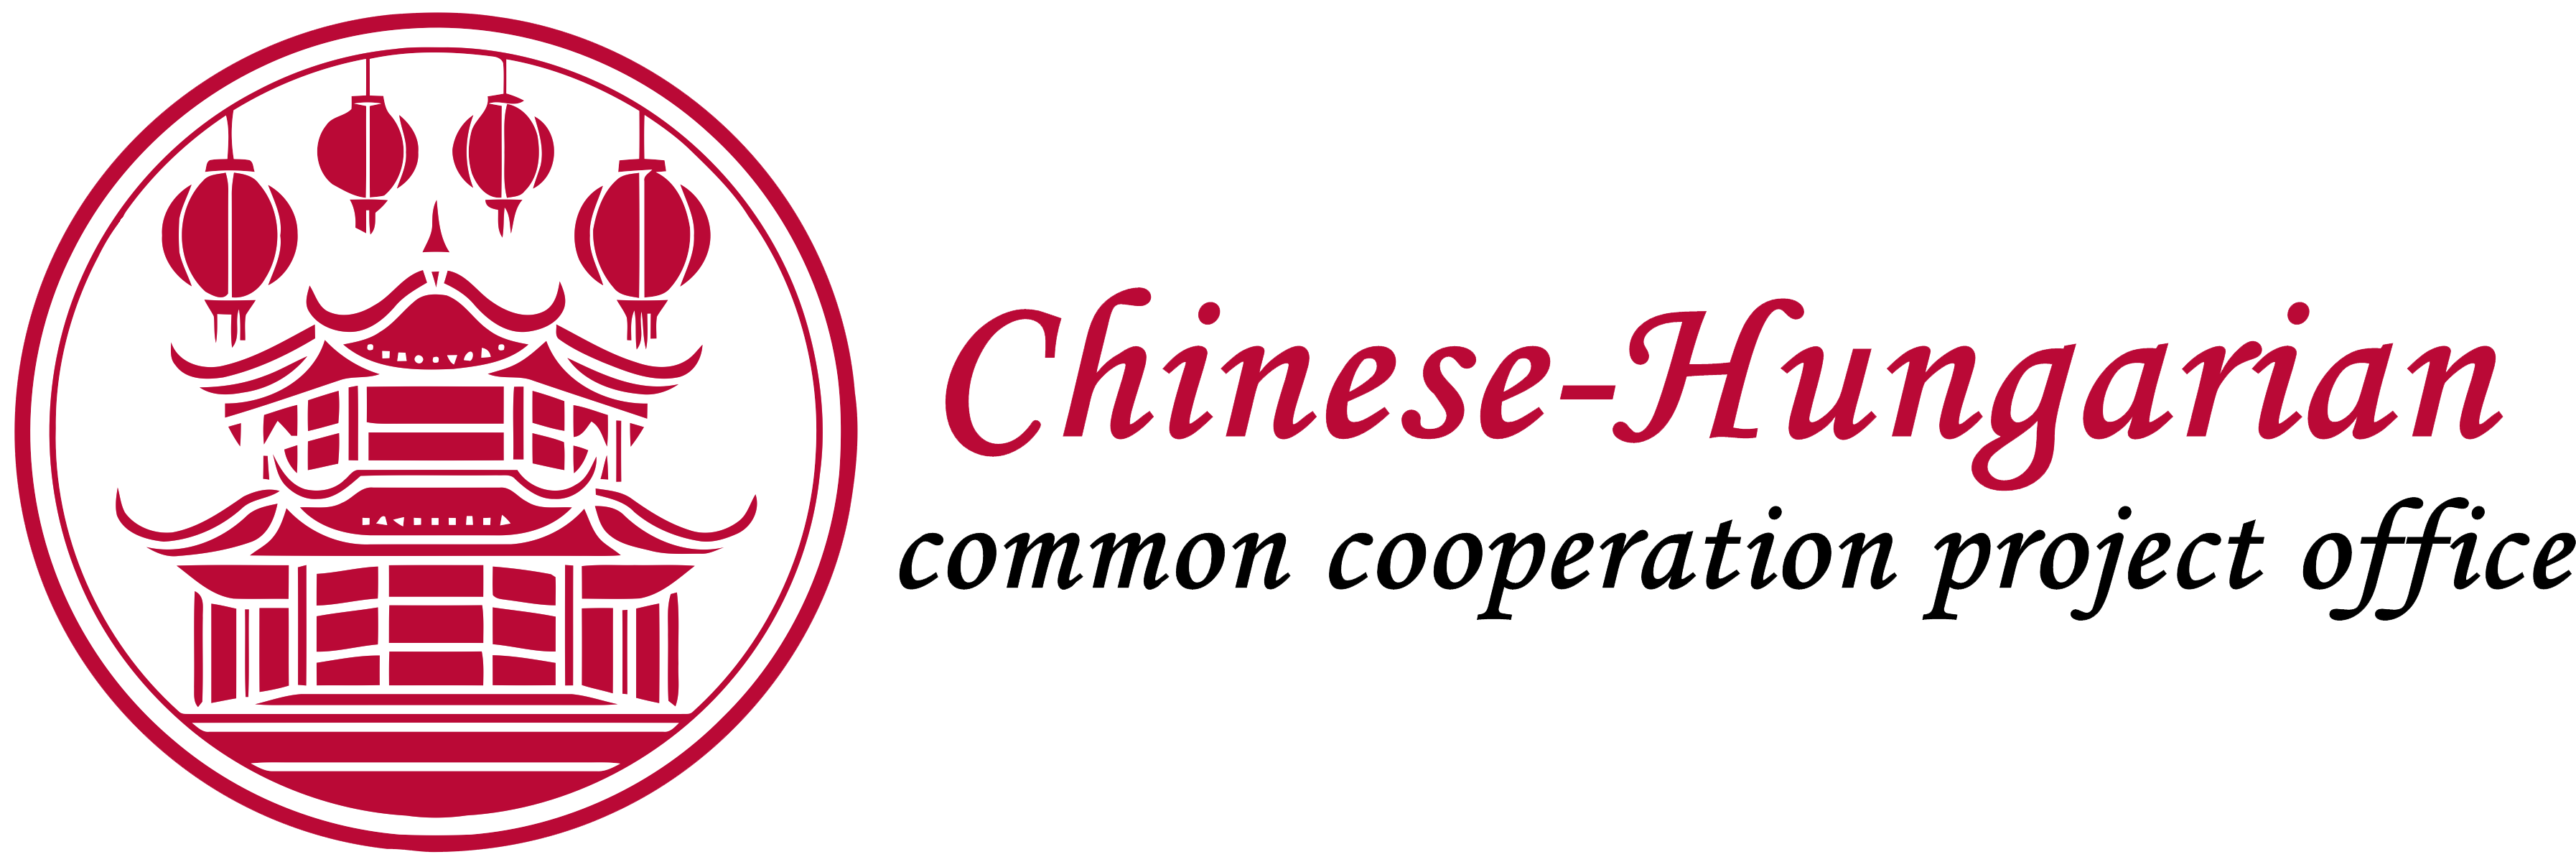 Chinese-Hungarian